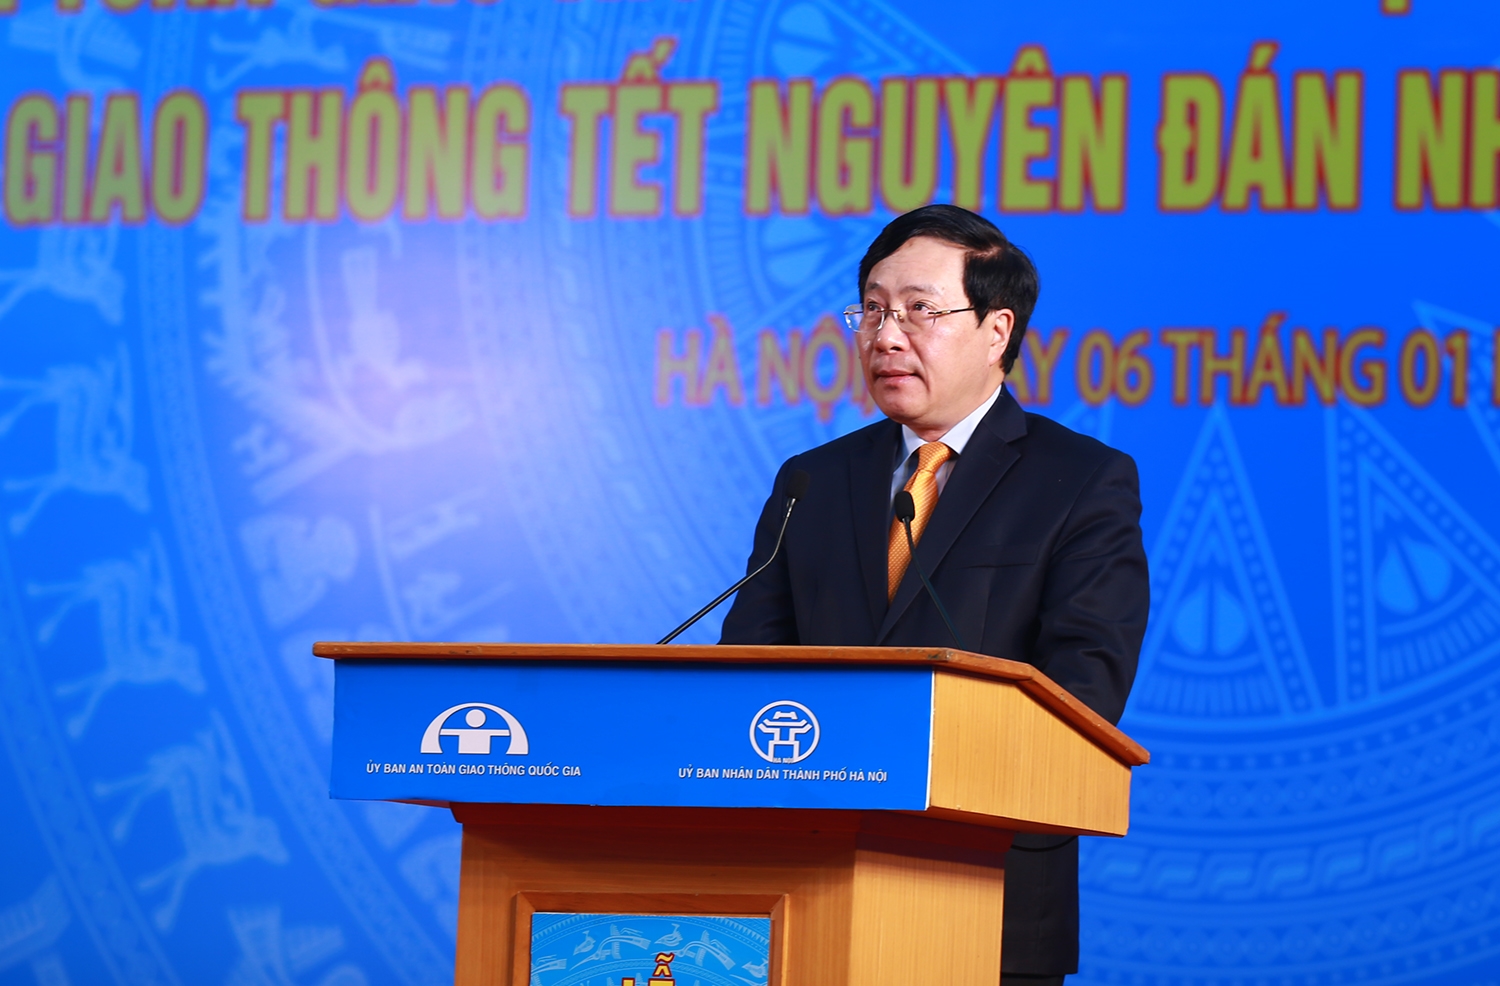 Phó Thủ tướng Phạm Bình Minh nhấn mạnh, năm 2022 phải thực hiện tốt các giải pháp bảo đảm trật tự, an toàn giao thông tương ứng với nhịp độ phát triển kinh tế, sự gia tăng nhu cầu vận tải và mật độ phương tiện. (Ảnh: VGP/Hải Minh)